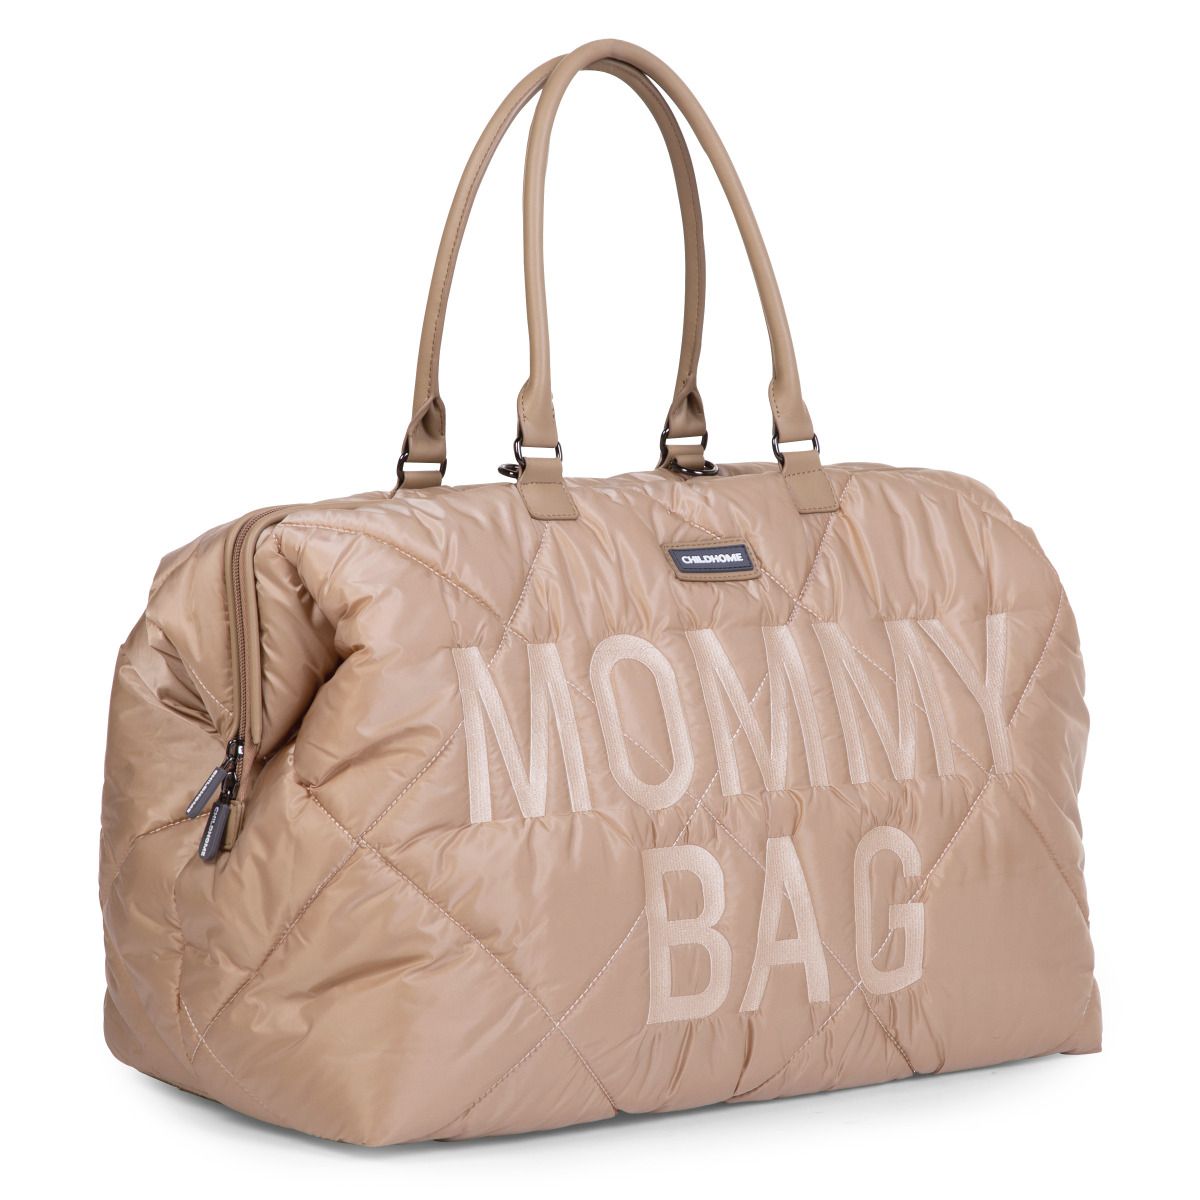 Сумка Childhome Mommy bag, дутая, бежевая (CWMBBPBE) - фото 5